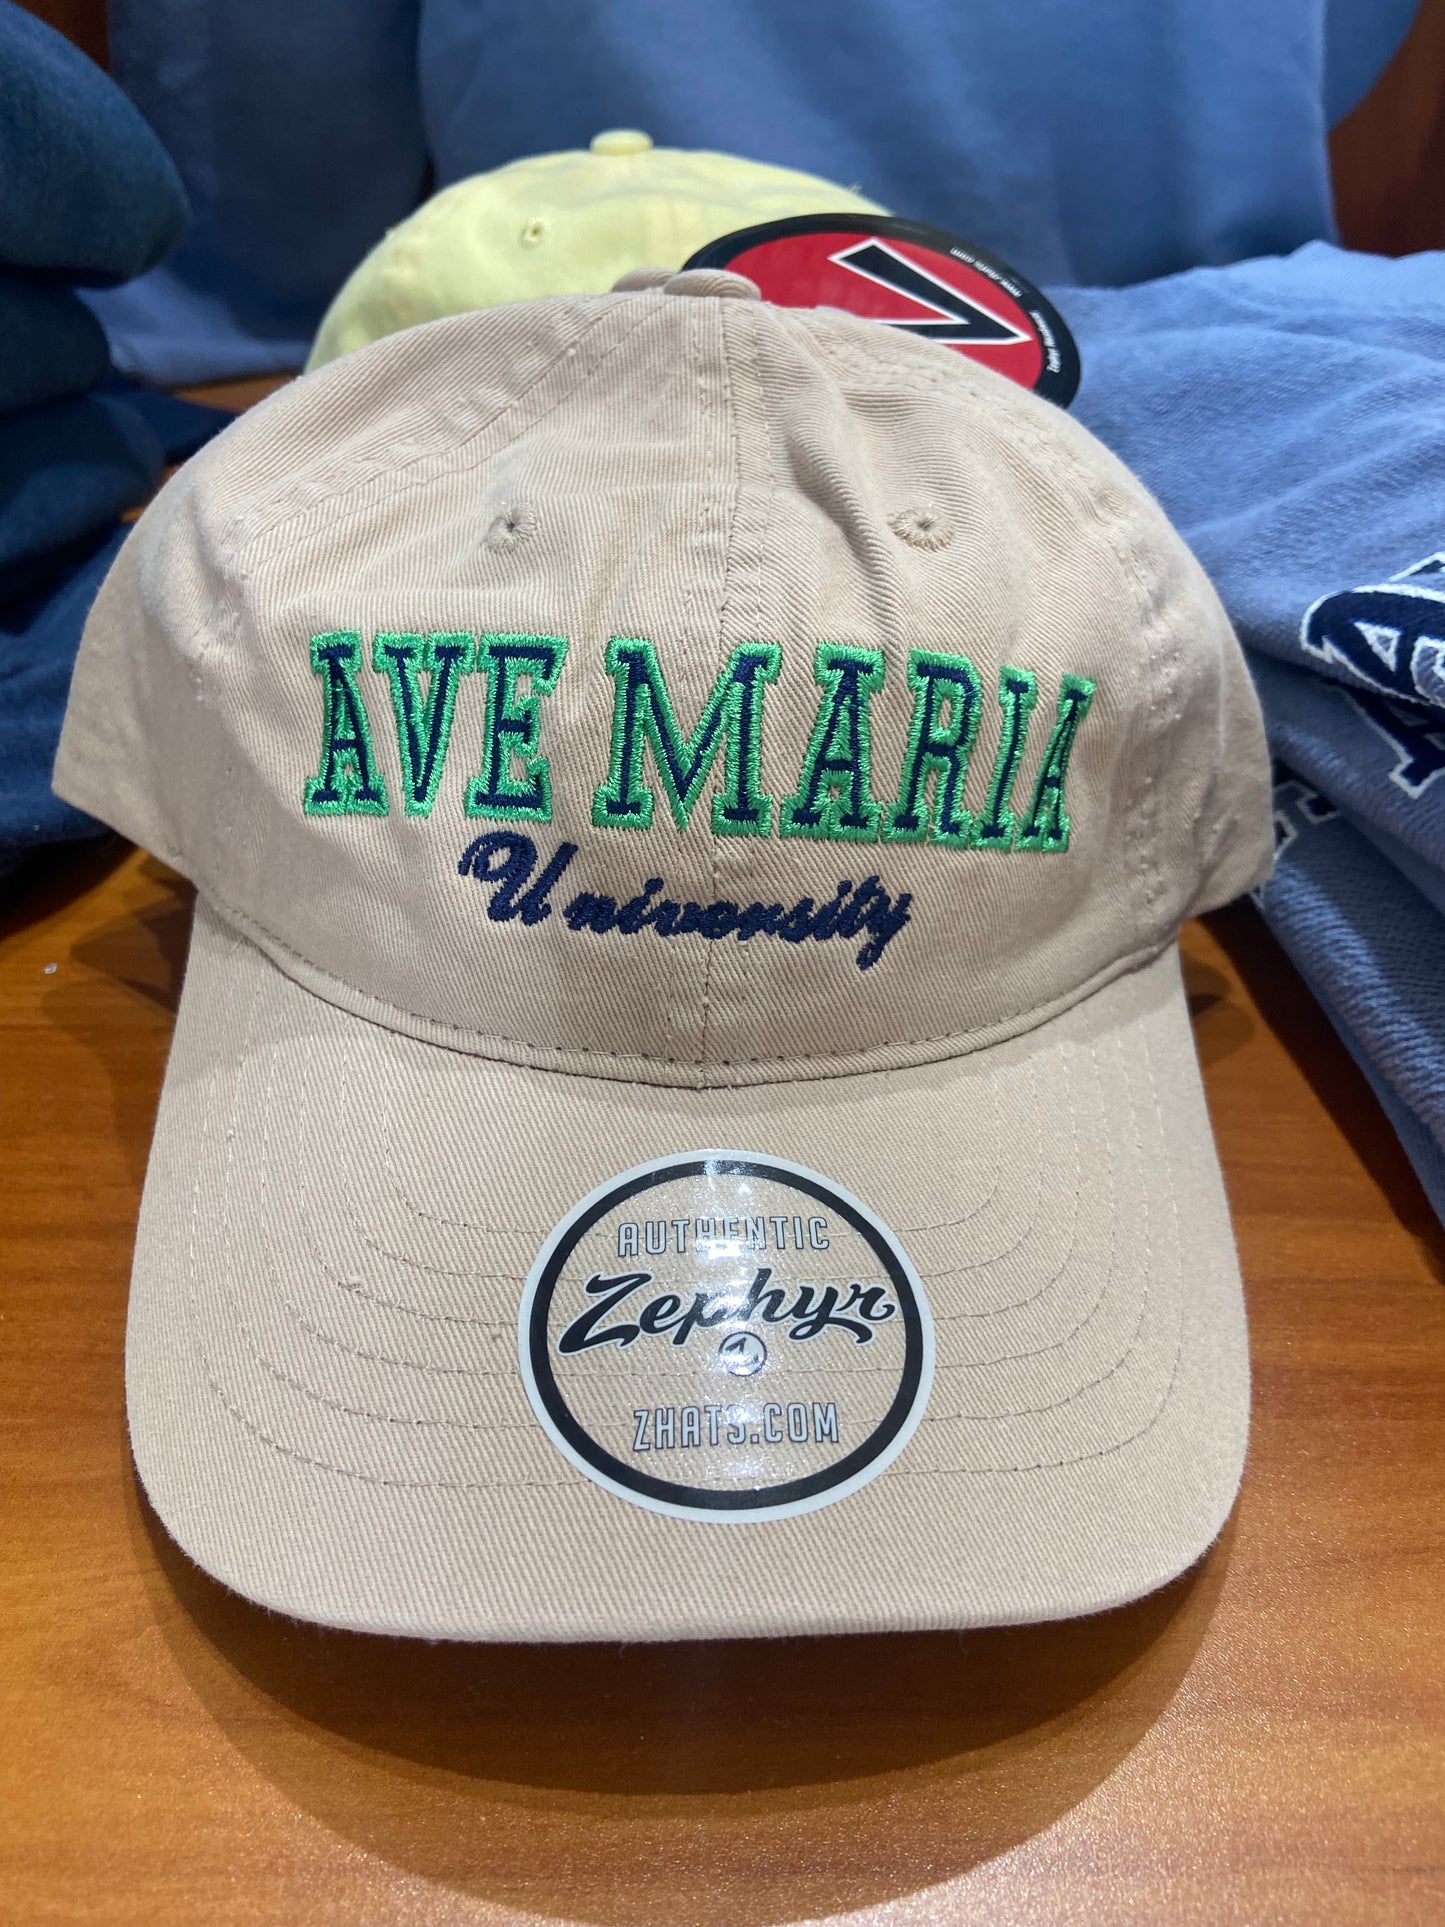 Ave Maria University Collegiate Hat